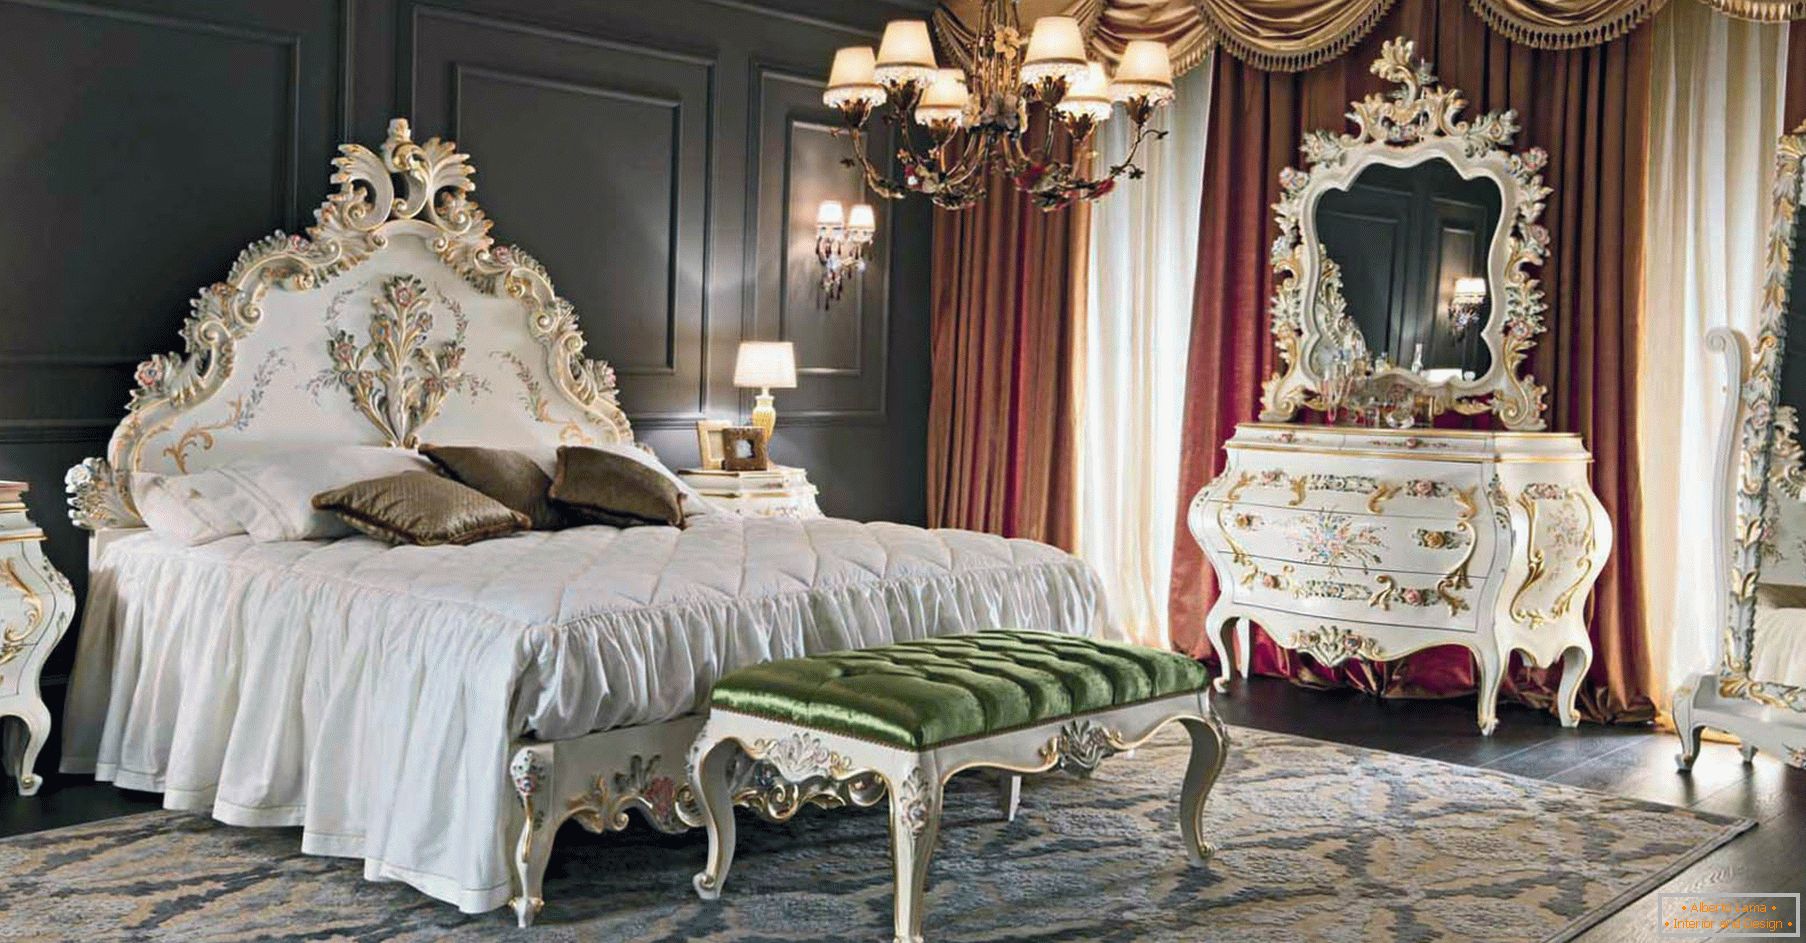 Za okrasitev spalnice je bil uporabljen kontrast temno rjave, zlate, rdeče in bele barve. Pohištvo je izbrano glede na slog baroka.